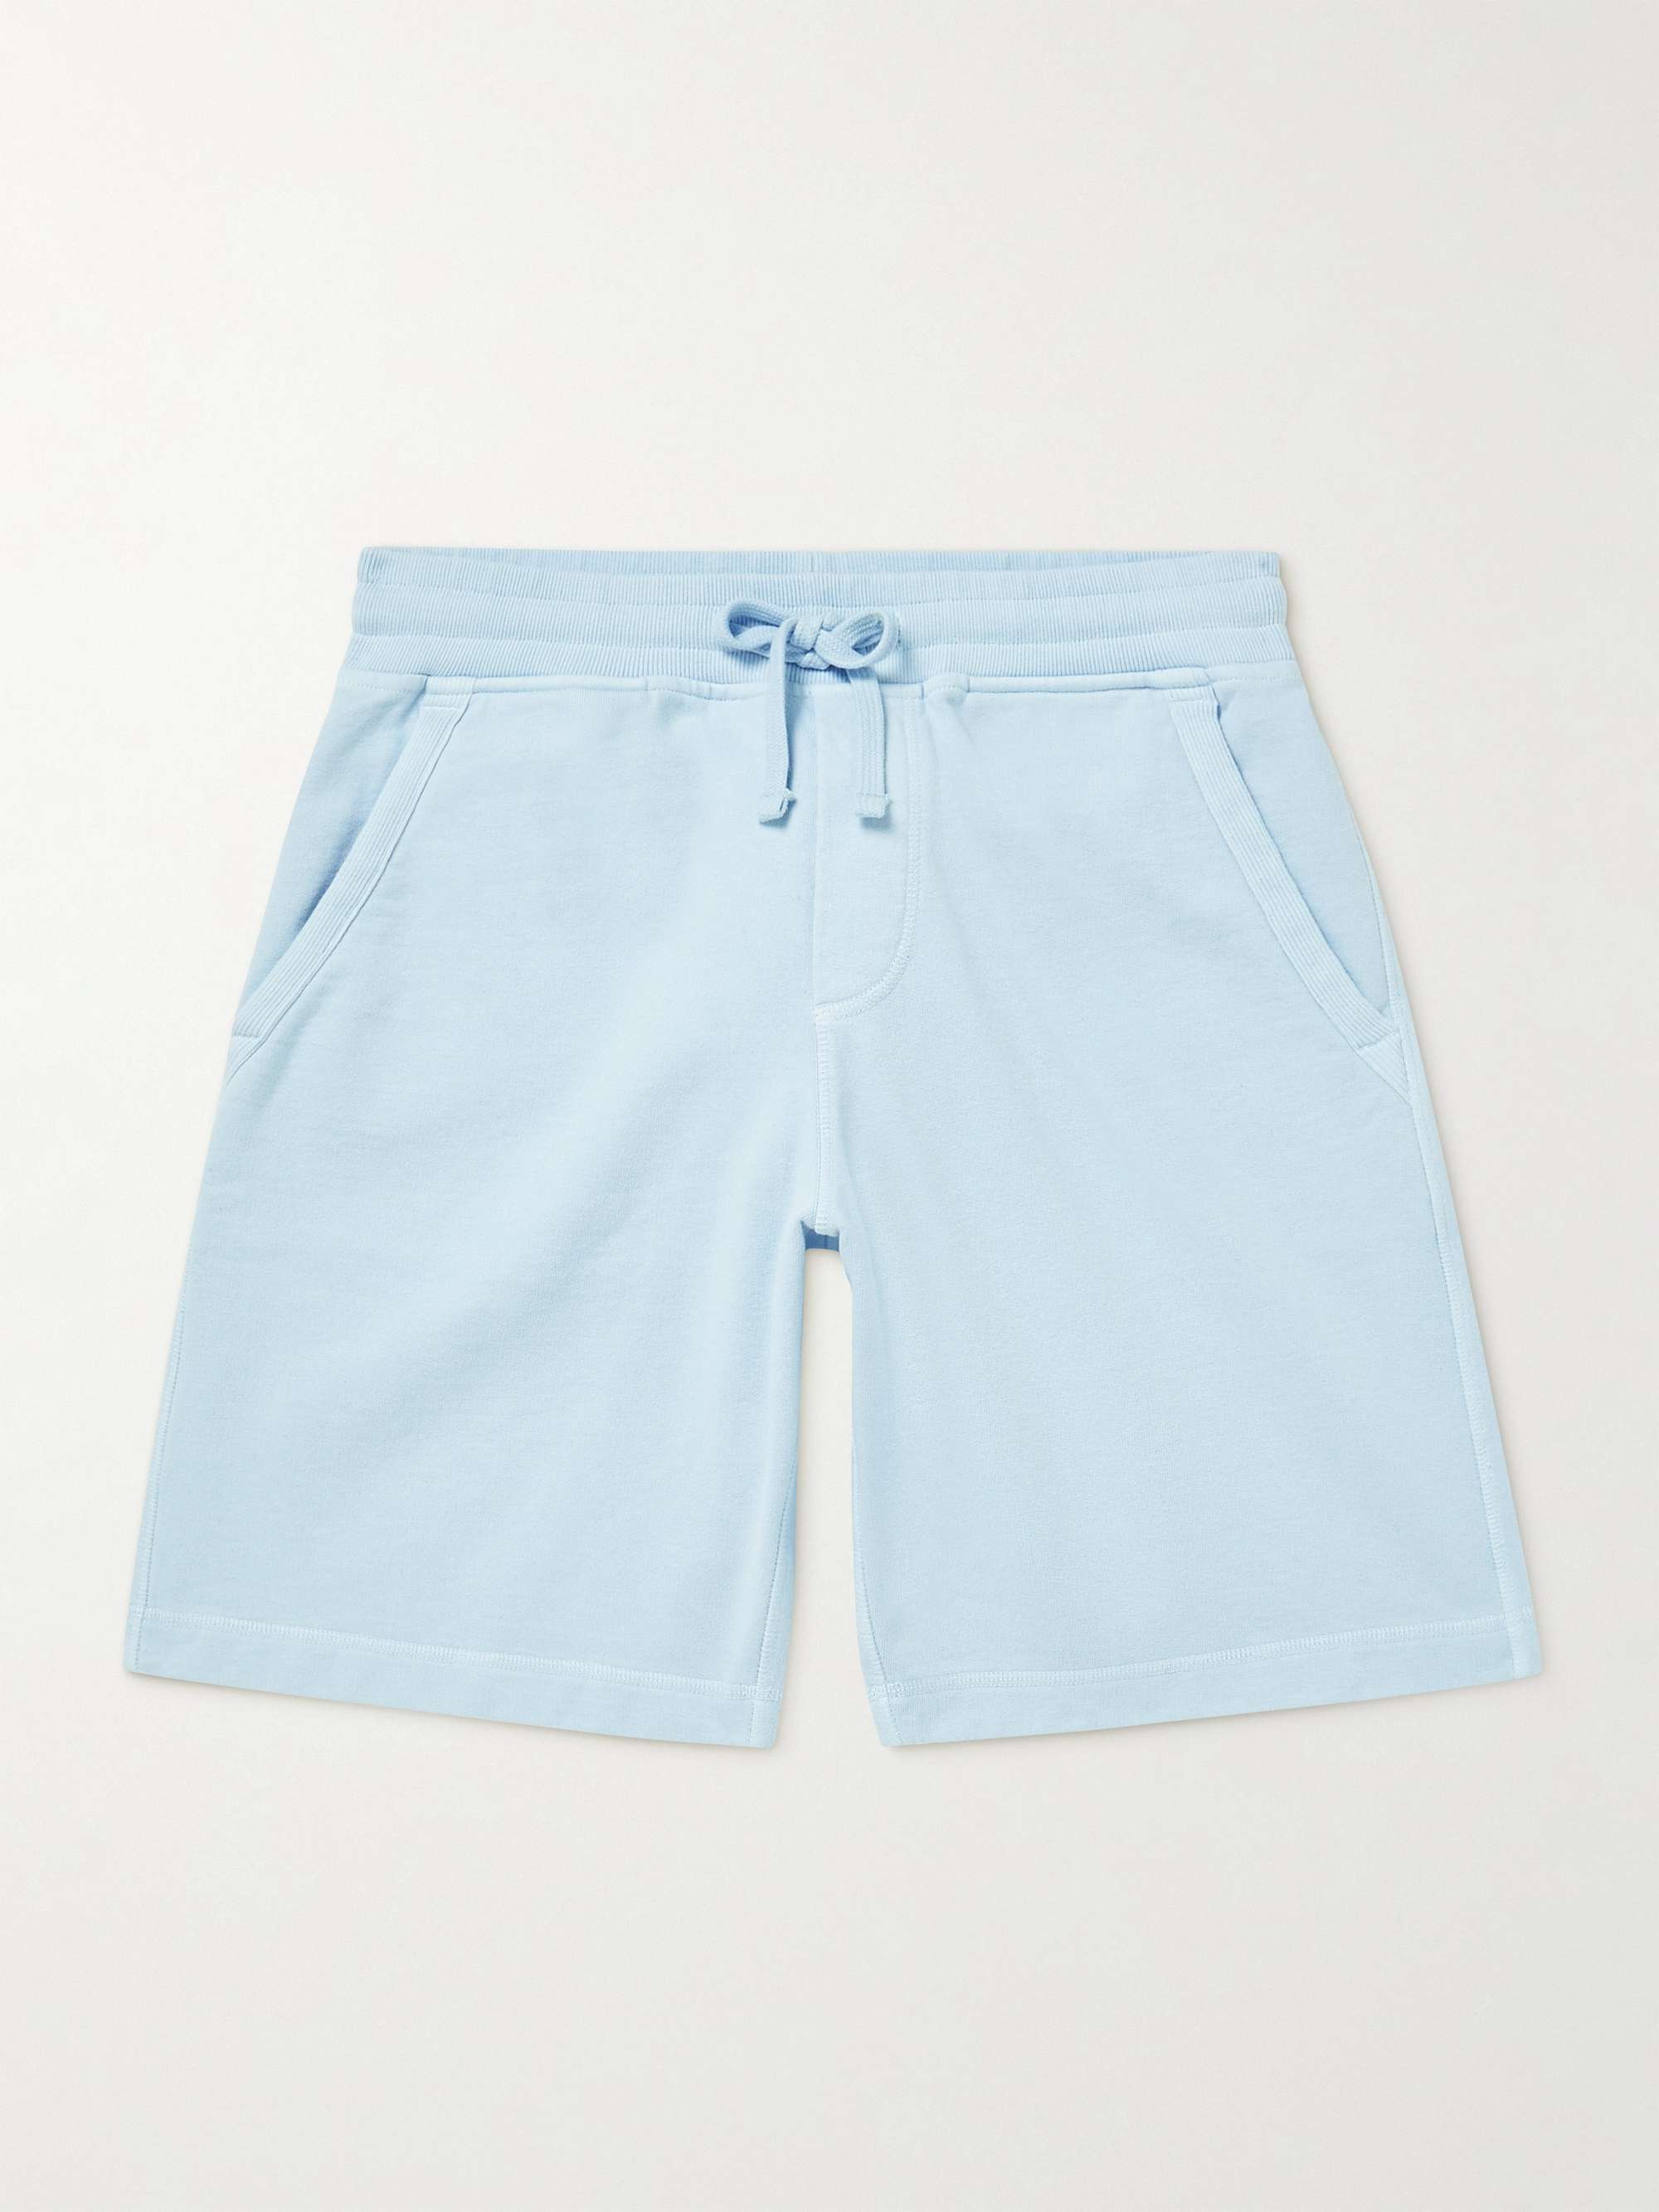 ORLEBAR BROWN Frederick Garment-Dyed Organic Cotton-Jersey Drawstring Shorts